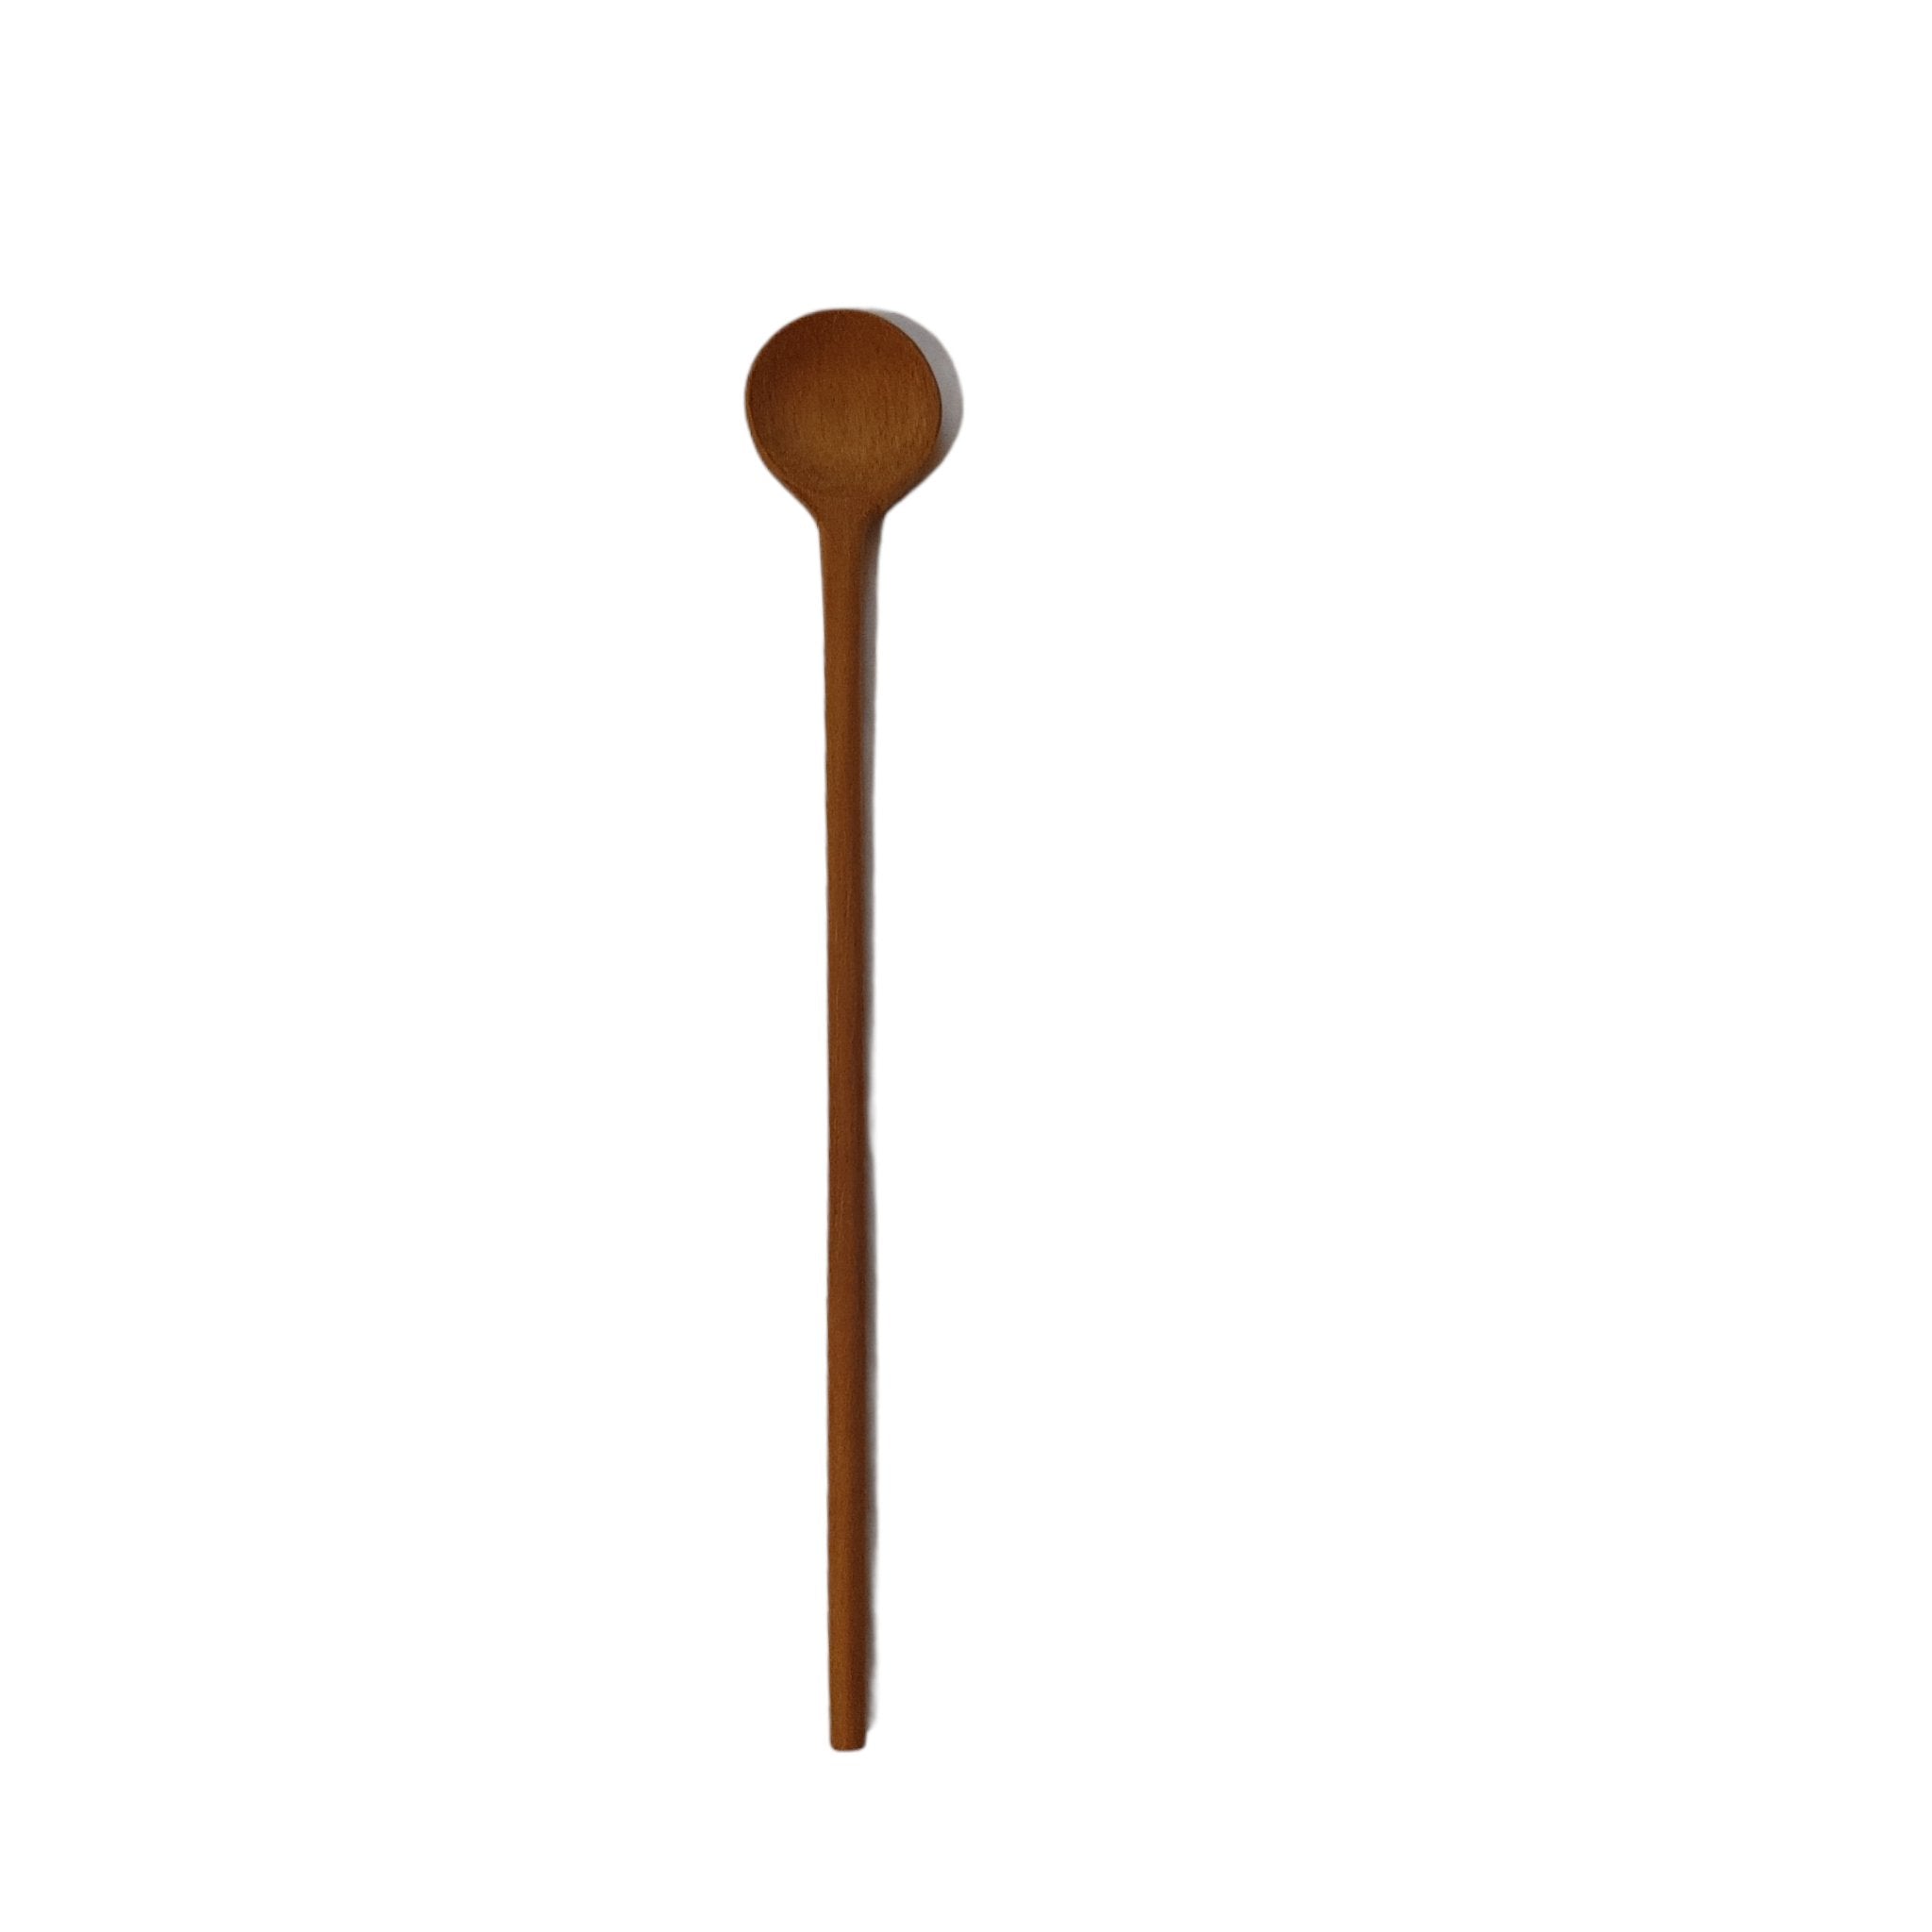 Longue petite cuillère en bois foncé et cordelette noire, MOKUSEI SUPUN